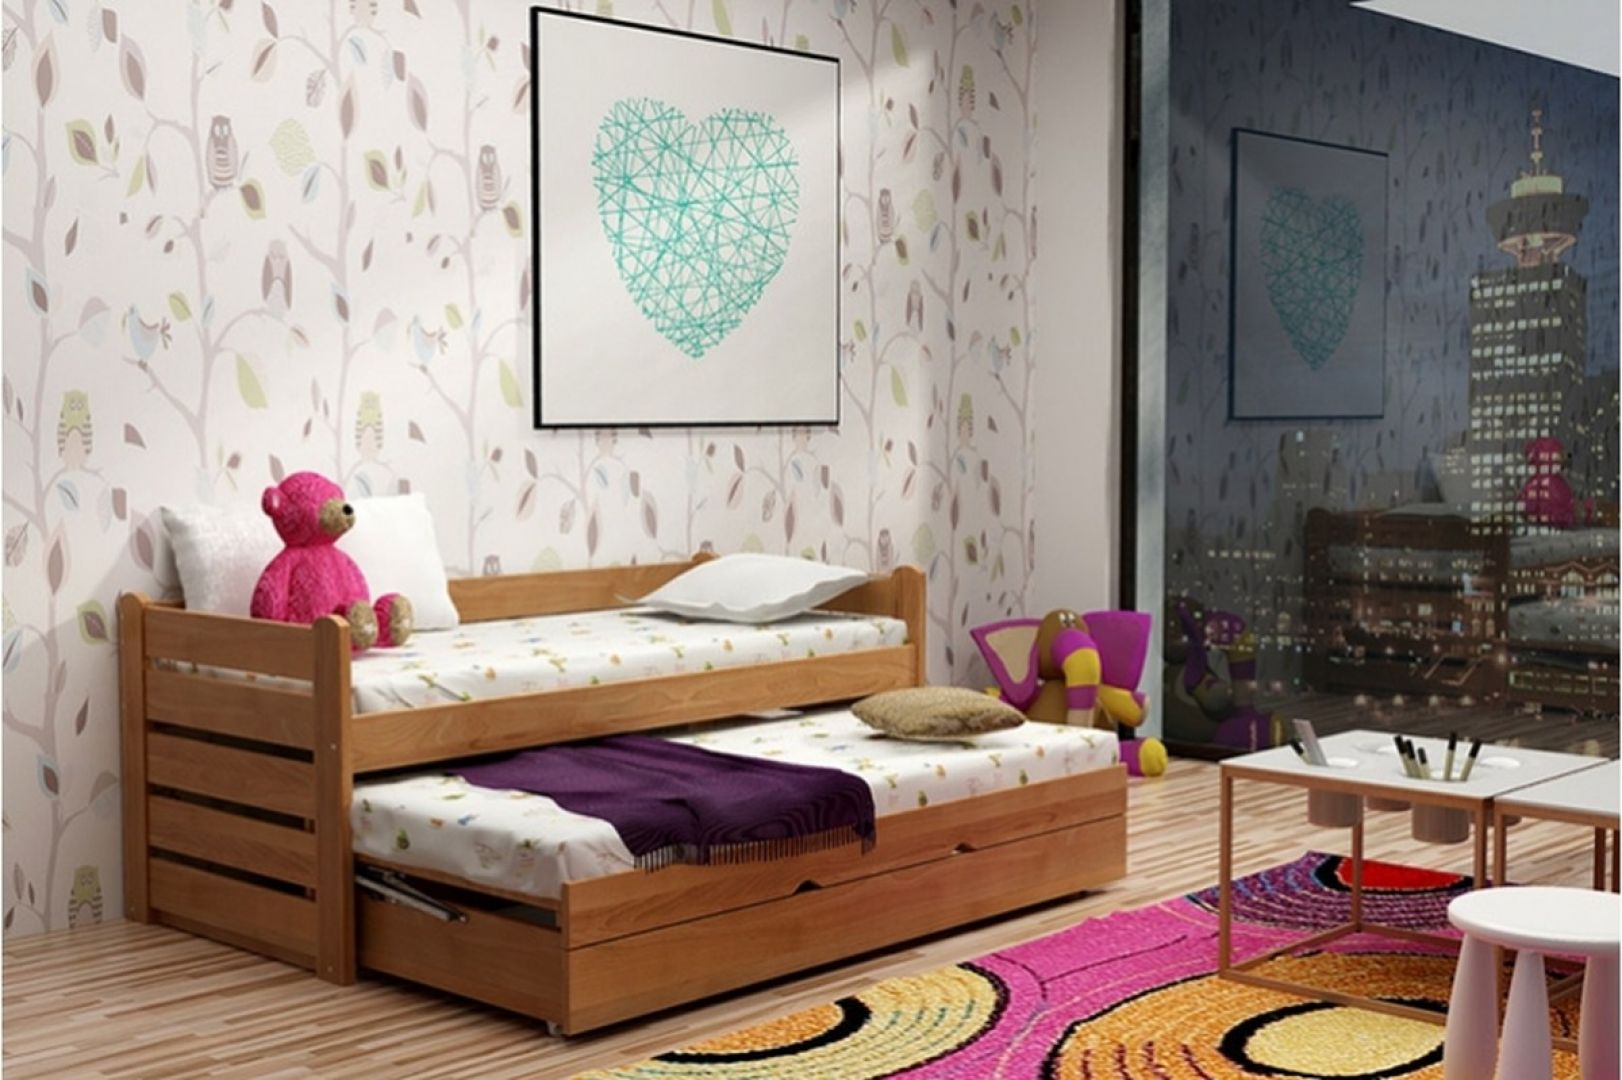 Łóżko z kolekcji For 2 Plus przeznaczone jest dla rodzeństwa. To dobra alternatywa dla wysokich łóżek piętrowych. Fot. Gabi